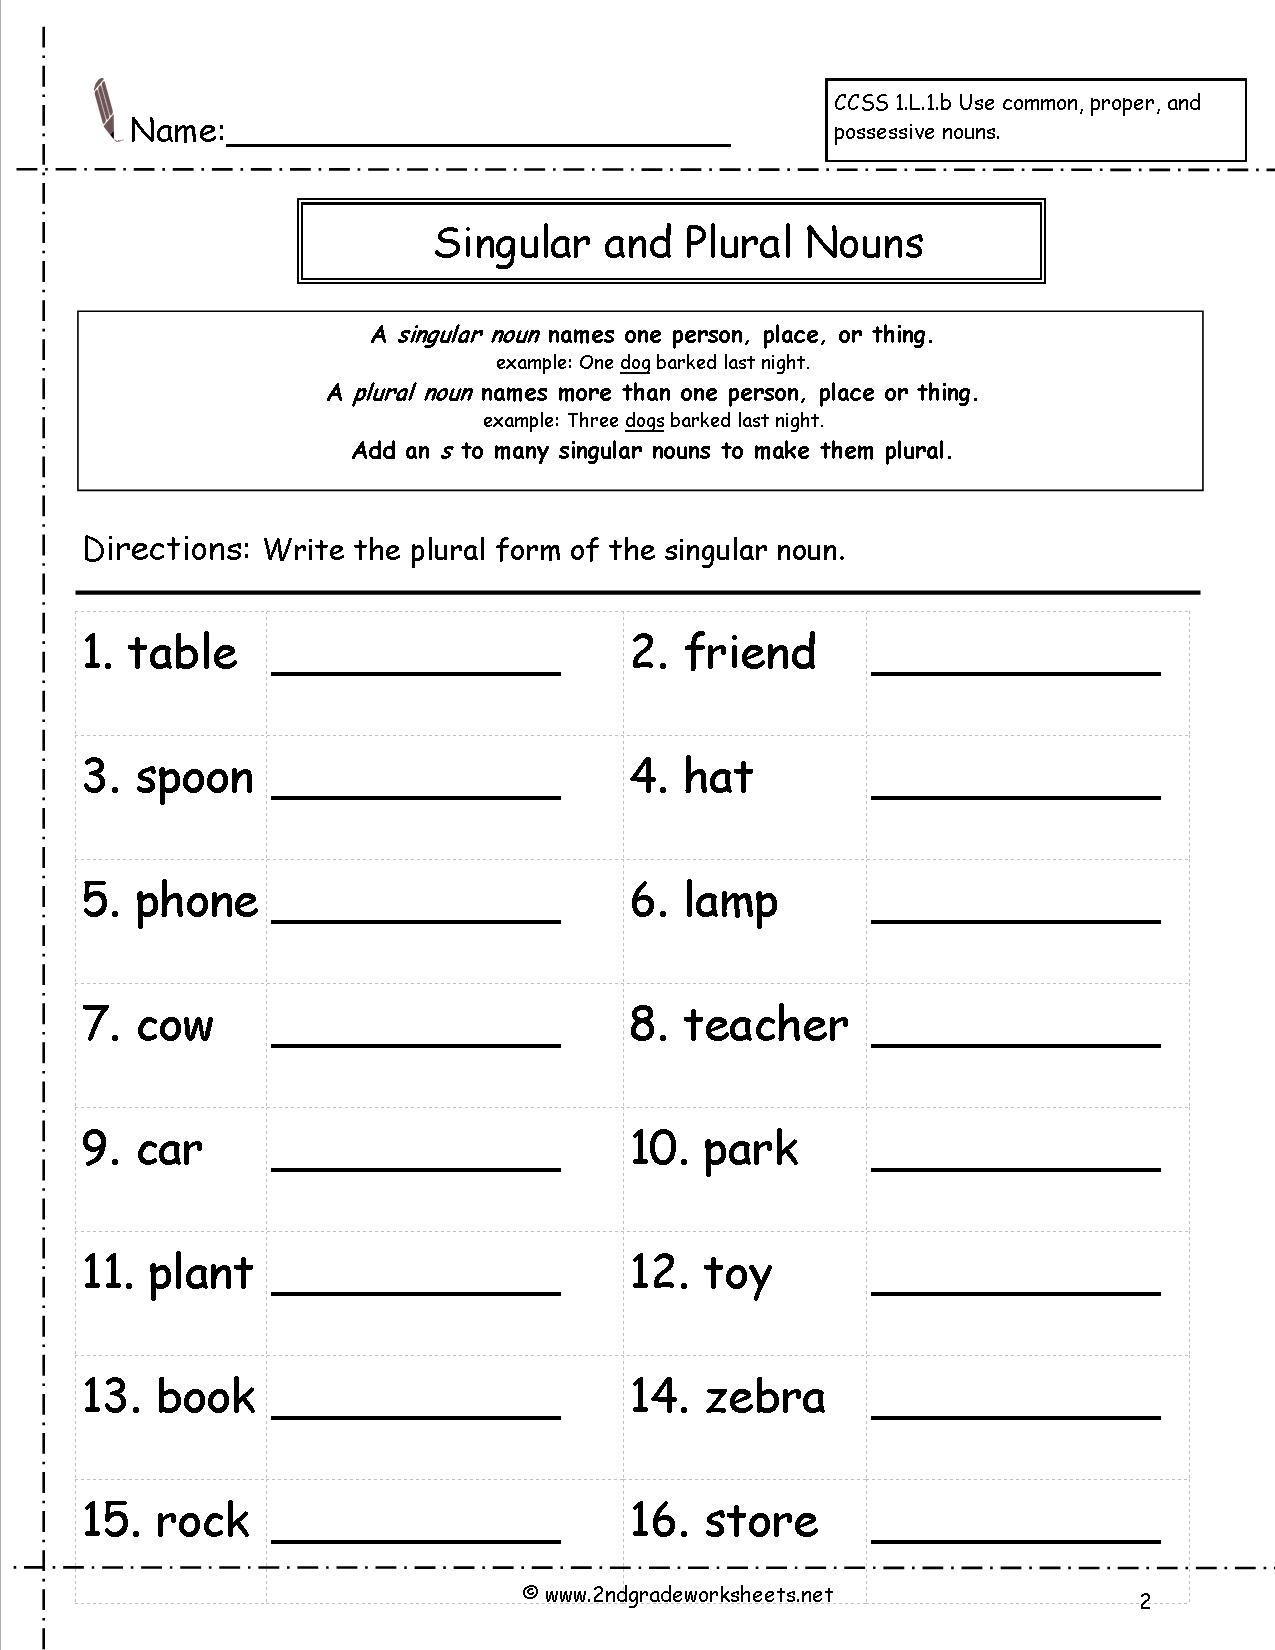 Singular To Plural Noun Worksheets